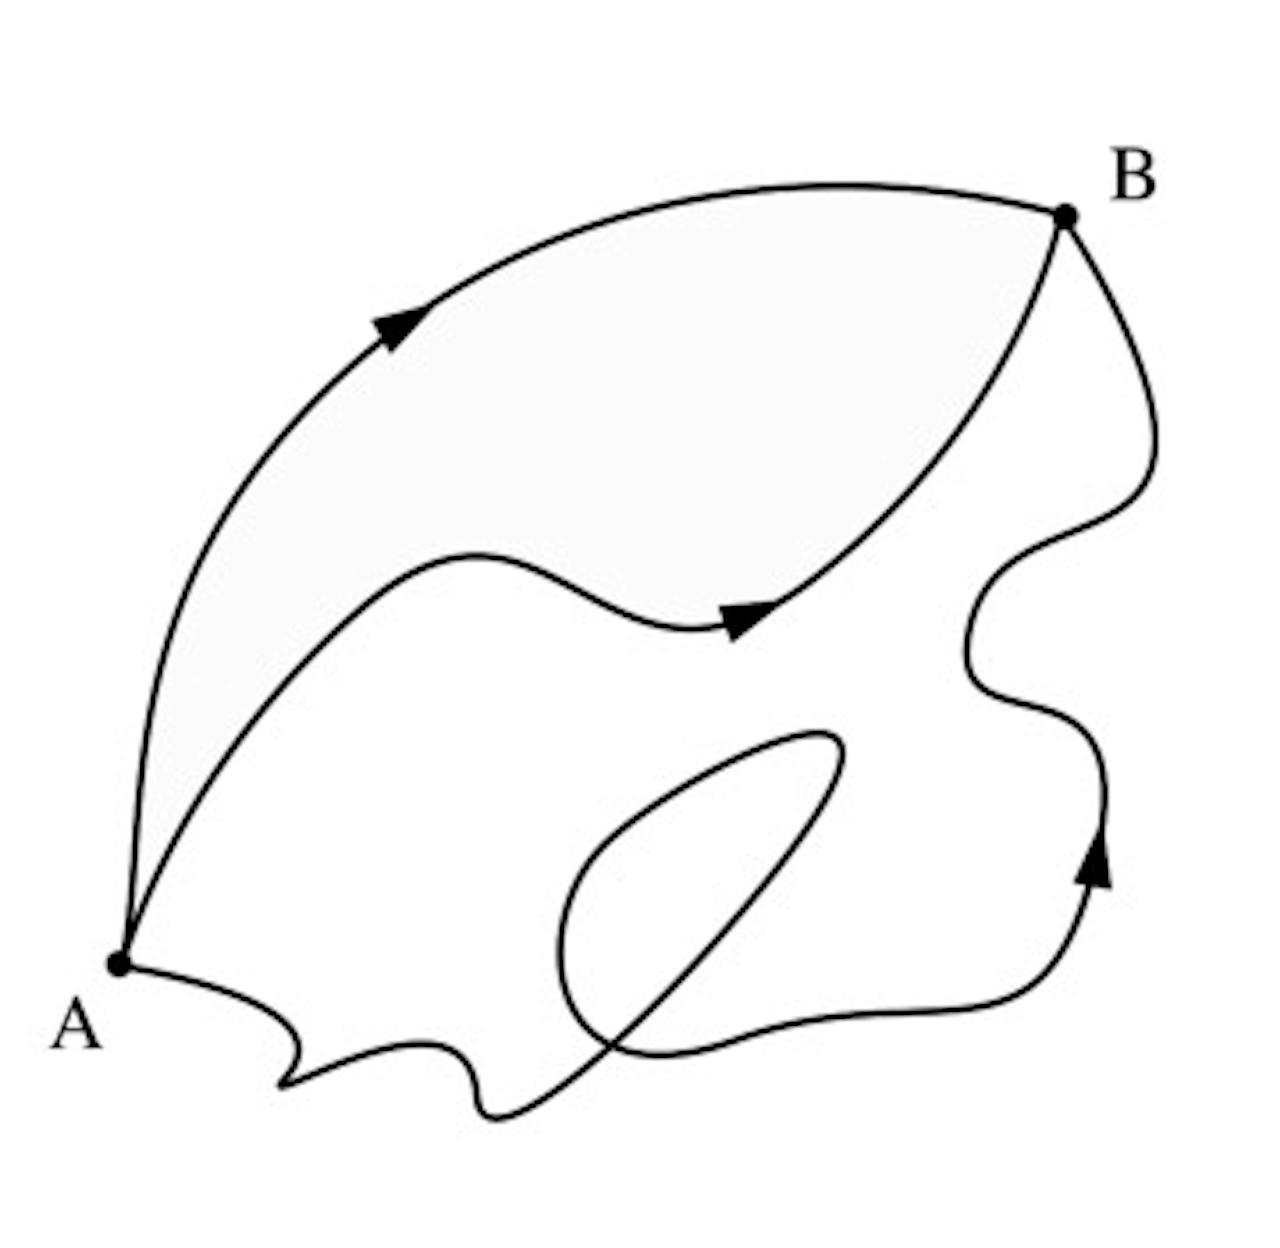 Diagram met de verschillende lijnen van A naar B.